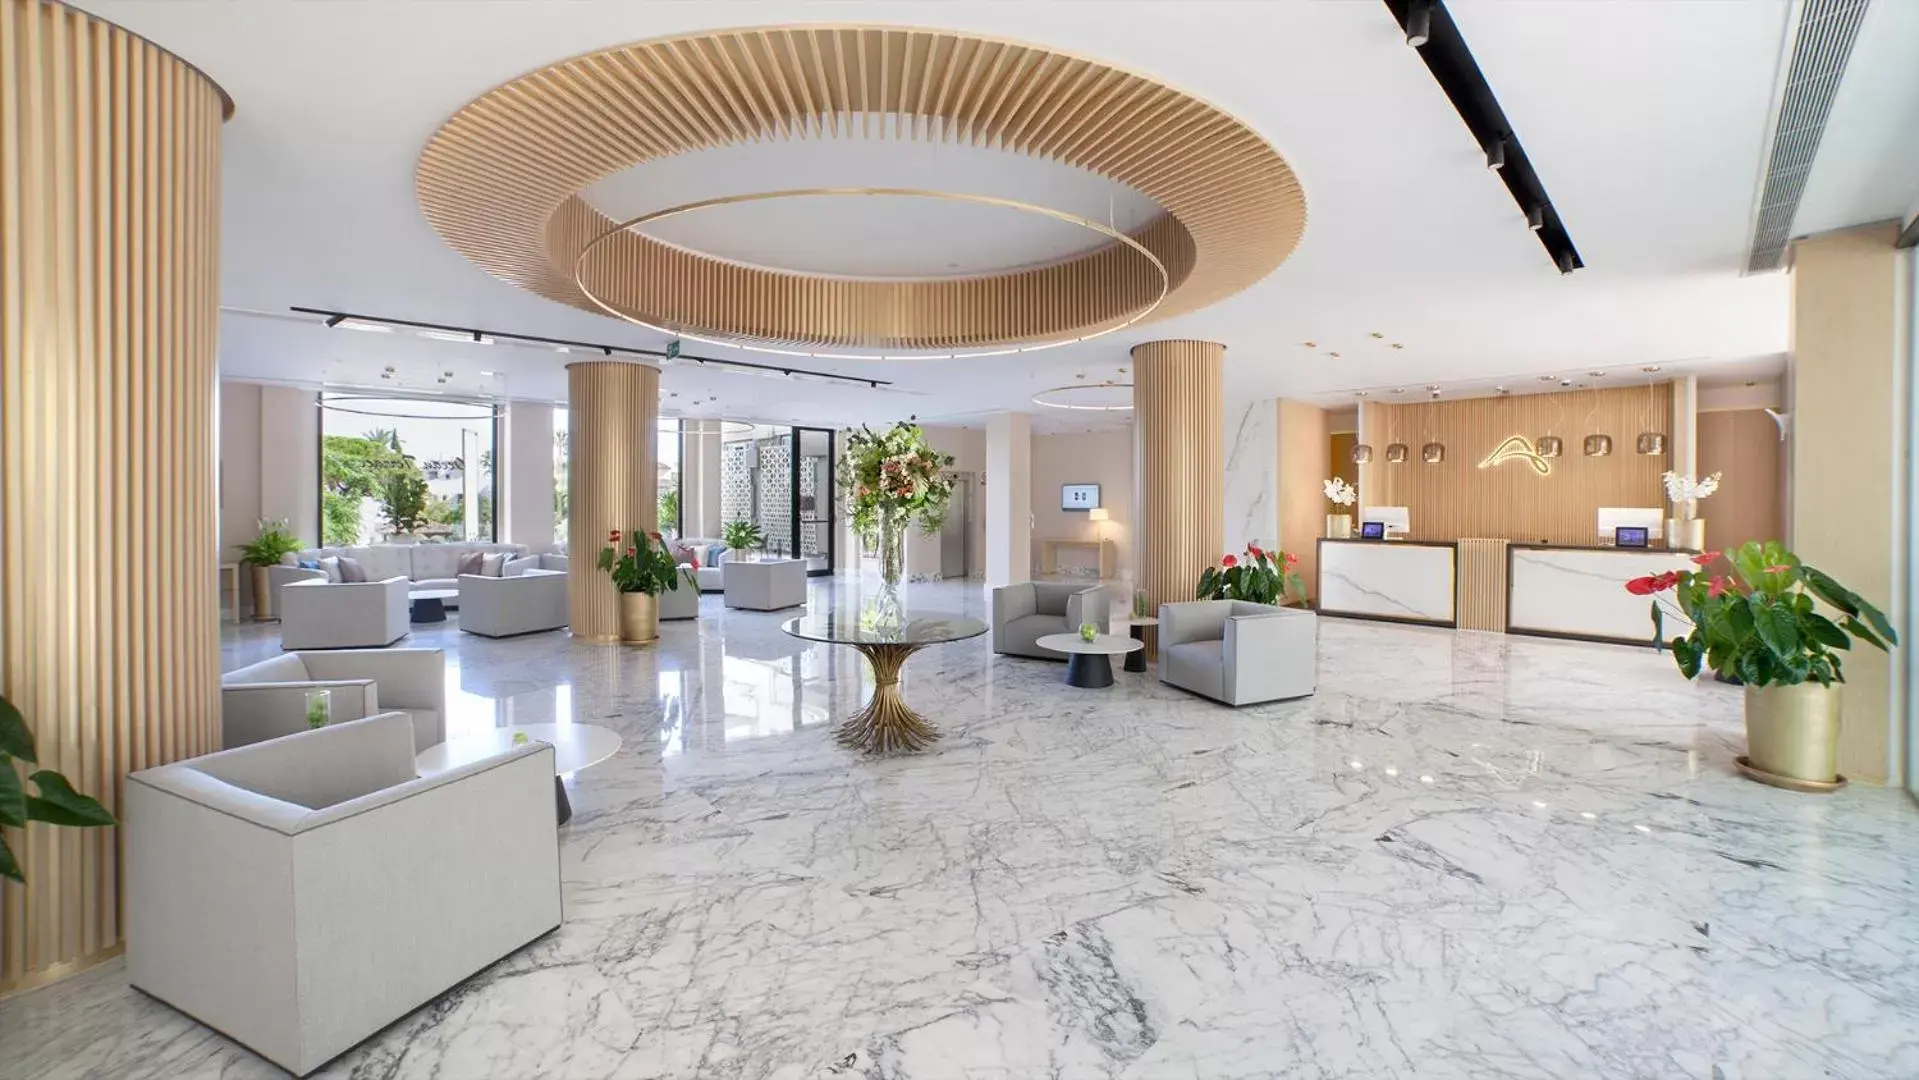 Lobby or reception, Lobby/Reception in Alanda Marbella Hotel